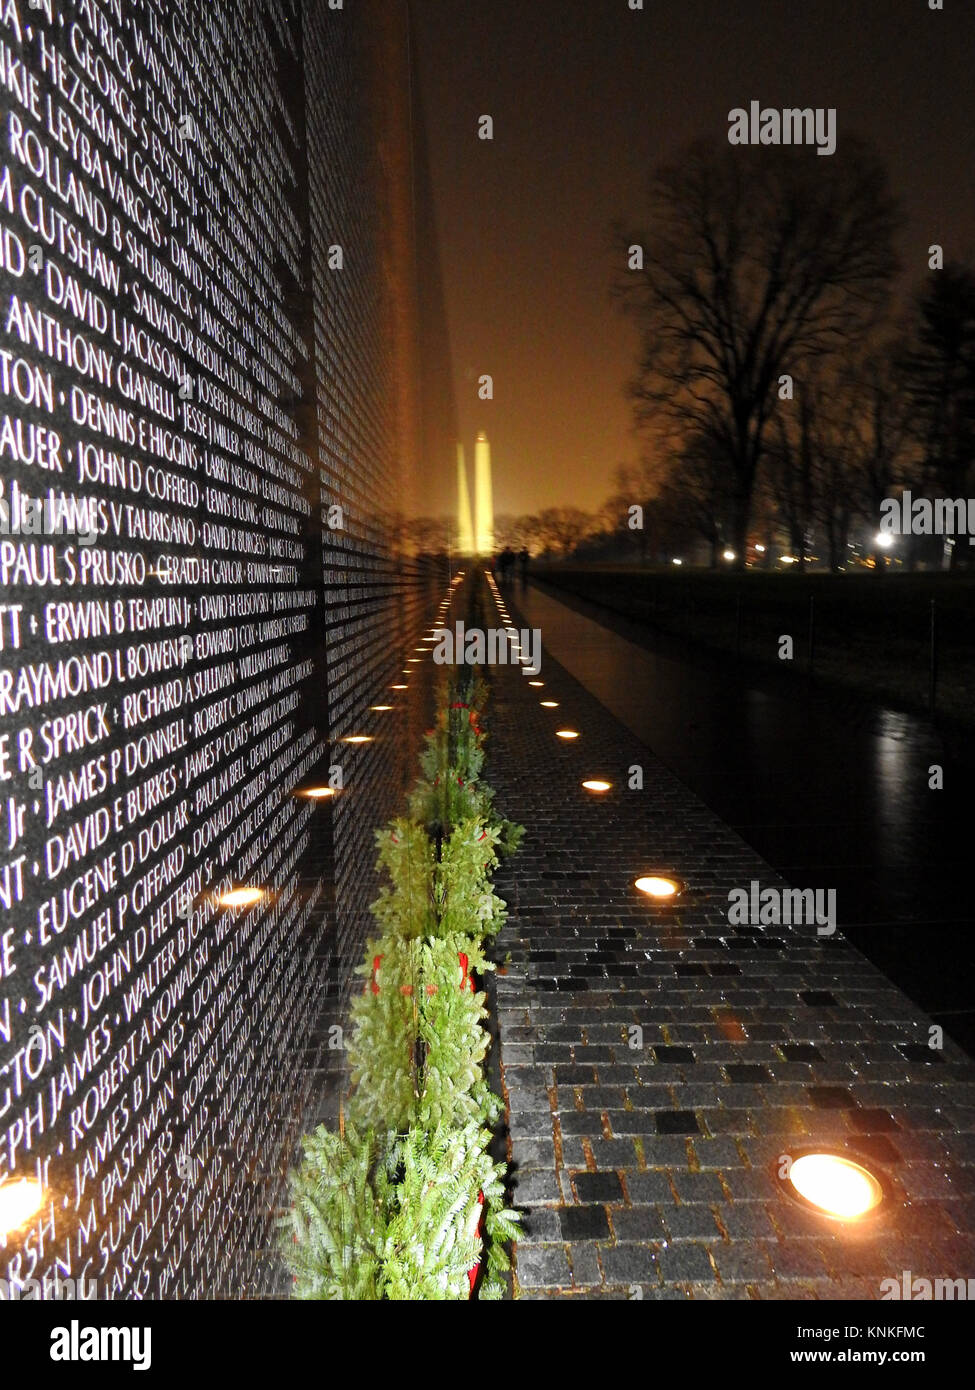 Vietnam Veterans Memorial et Washington Monument sur une nuit hiver Banque D'Images